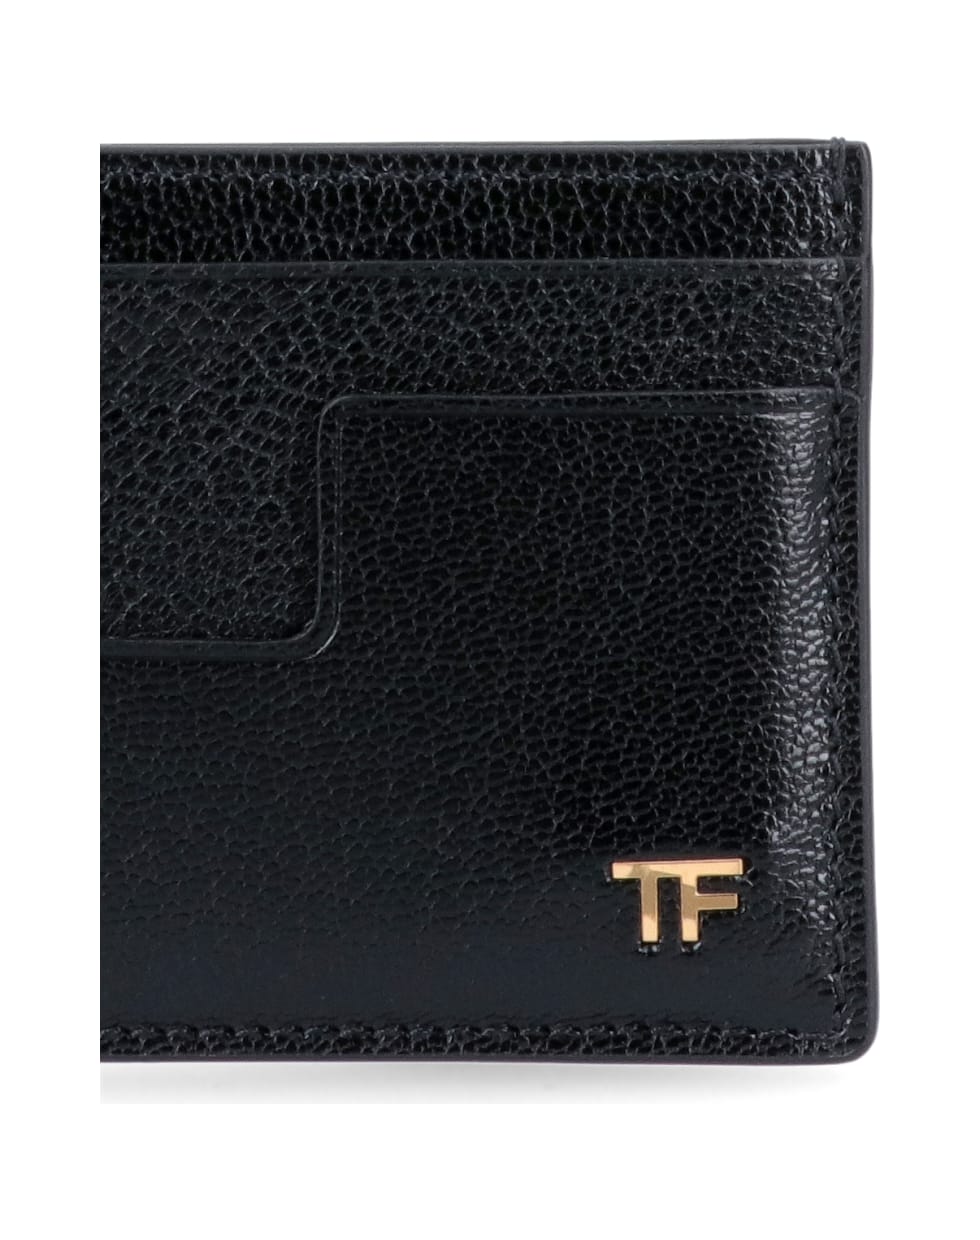 Tom Ford Wallet - Black